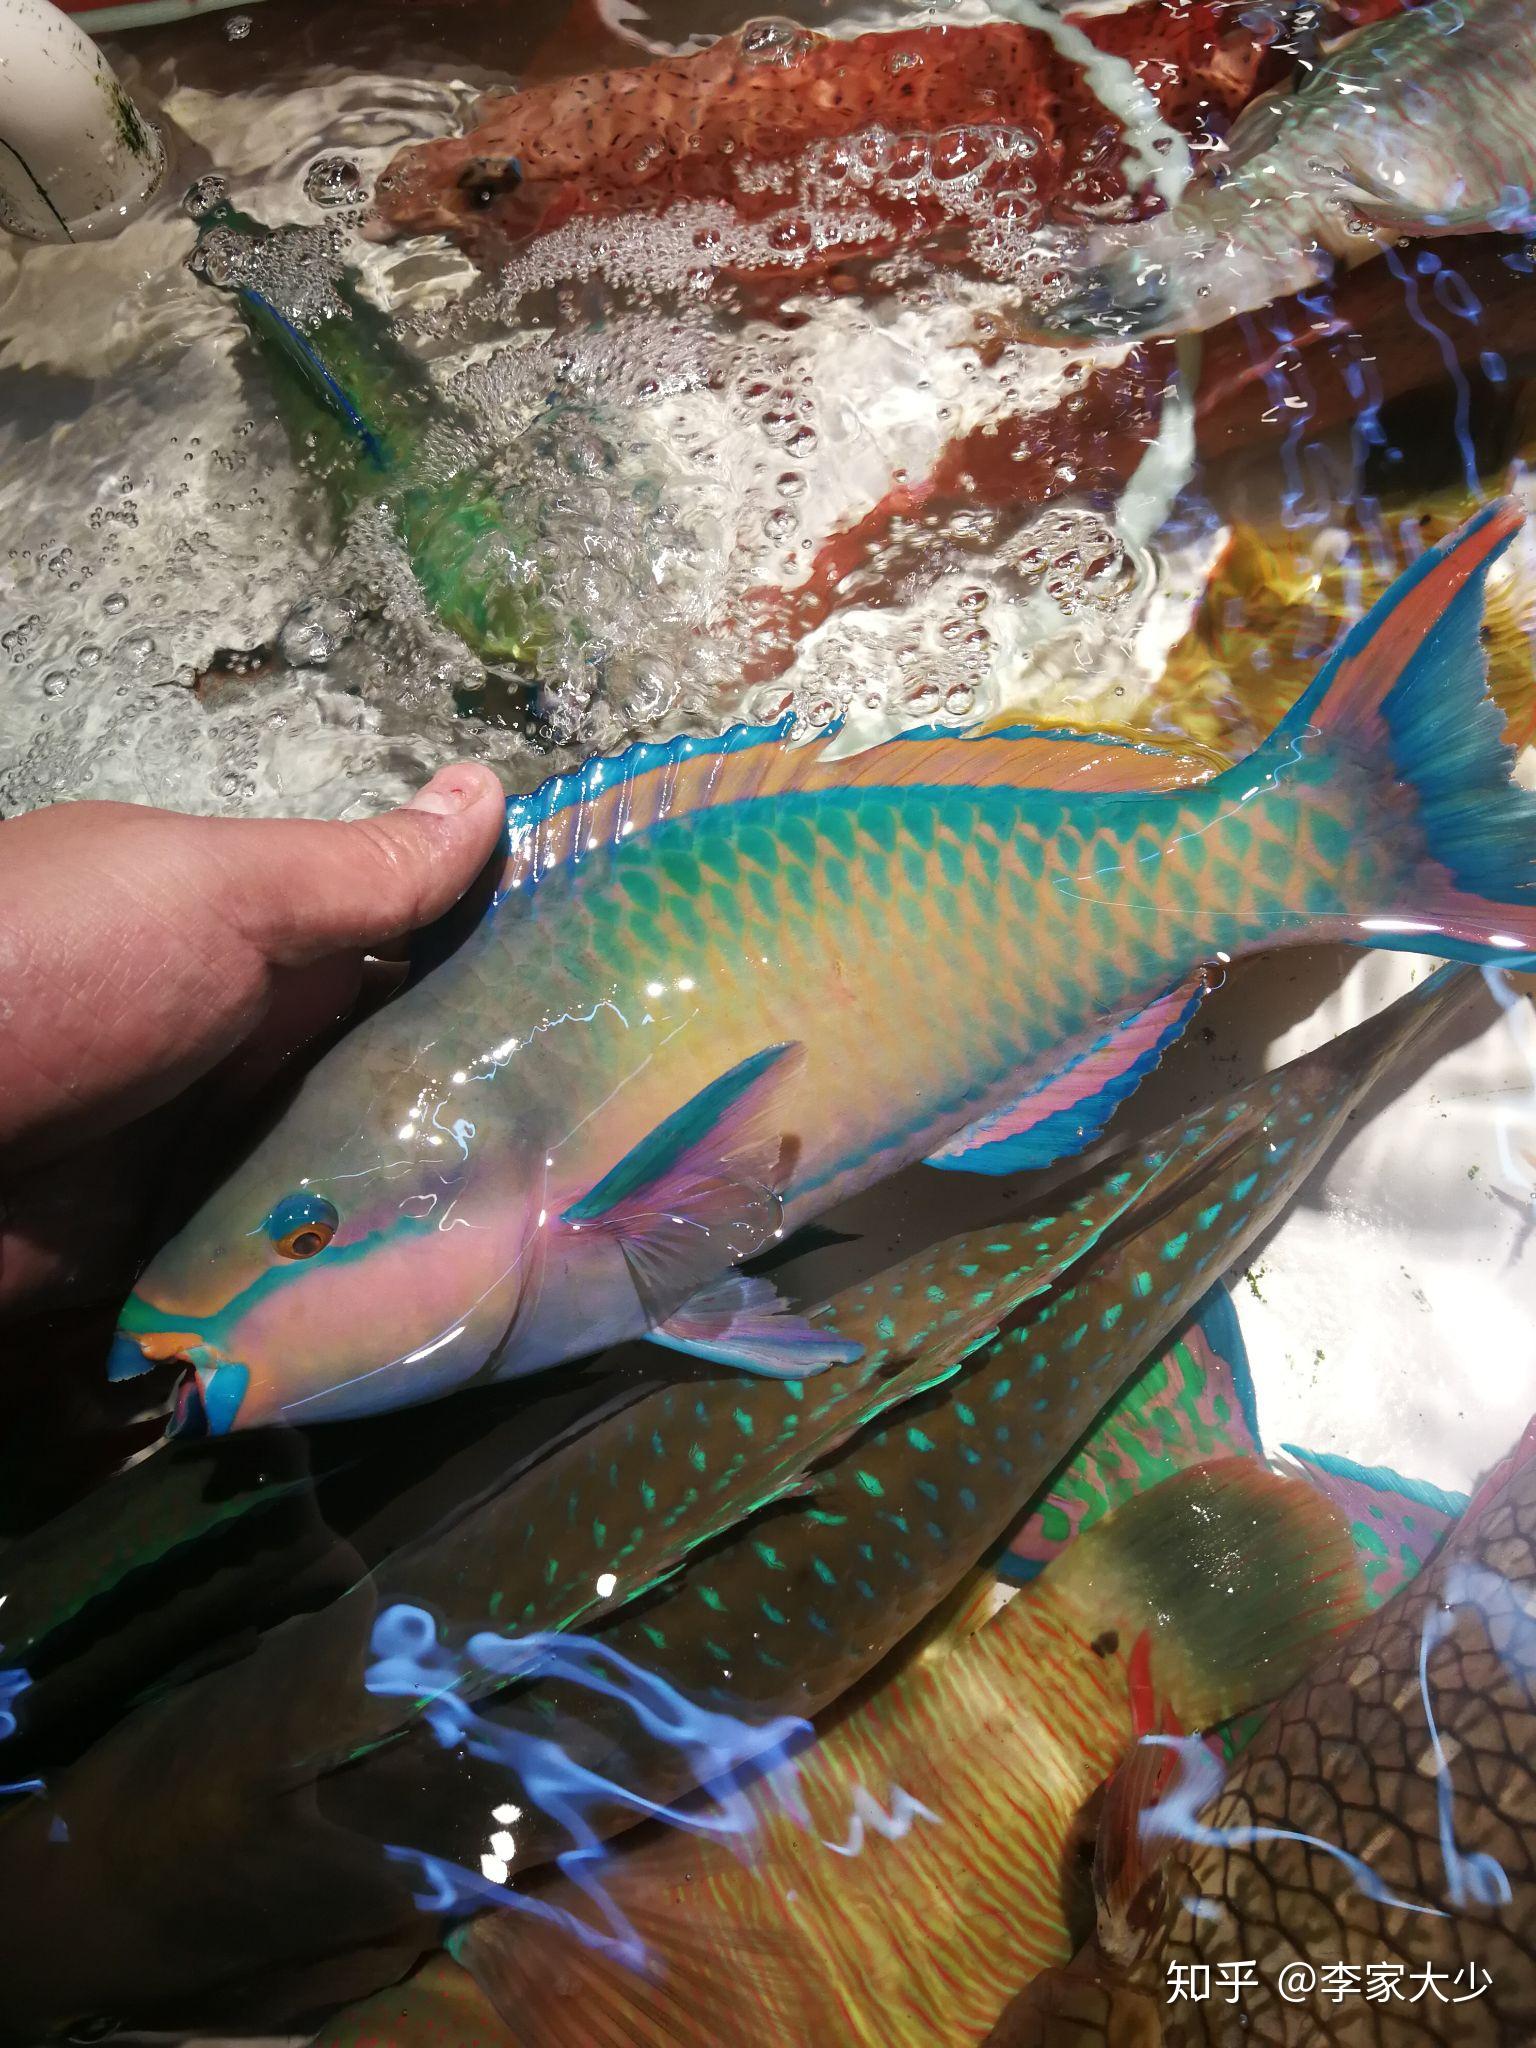 藍點鸚哥魚 | 美丽海生物图鉴 | 冲绳美丽海水族馆 - 冲绳美麗海 世代相传